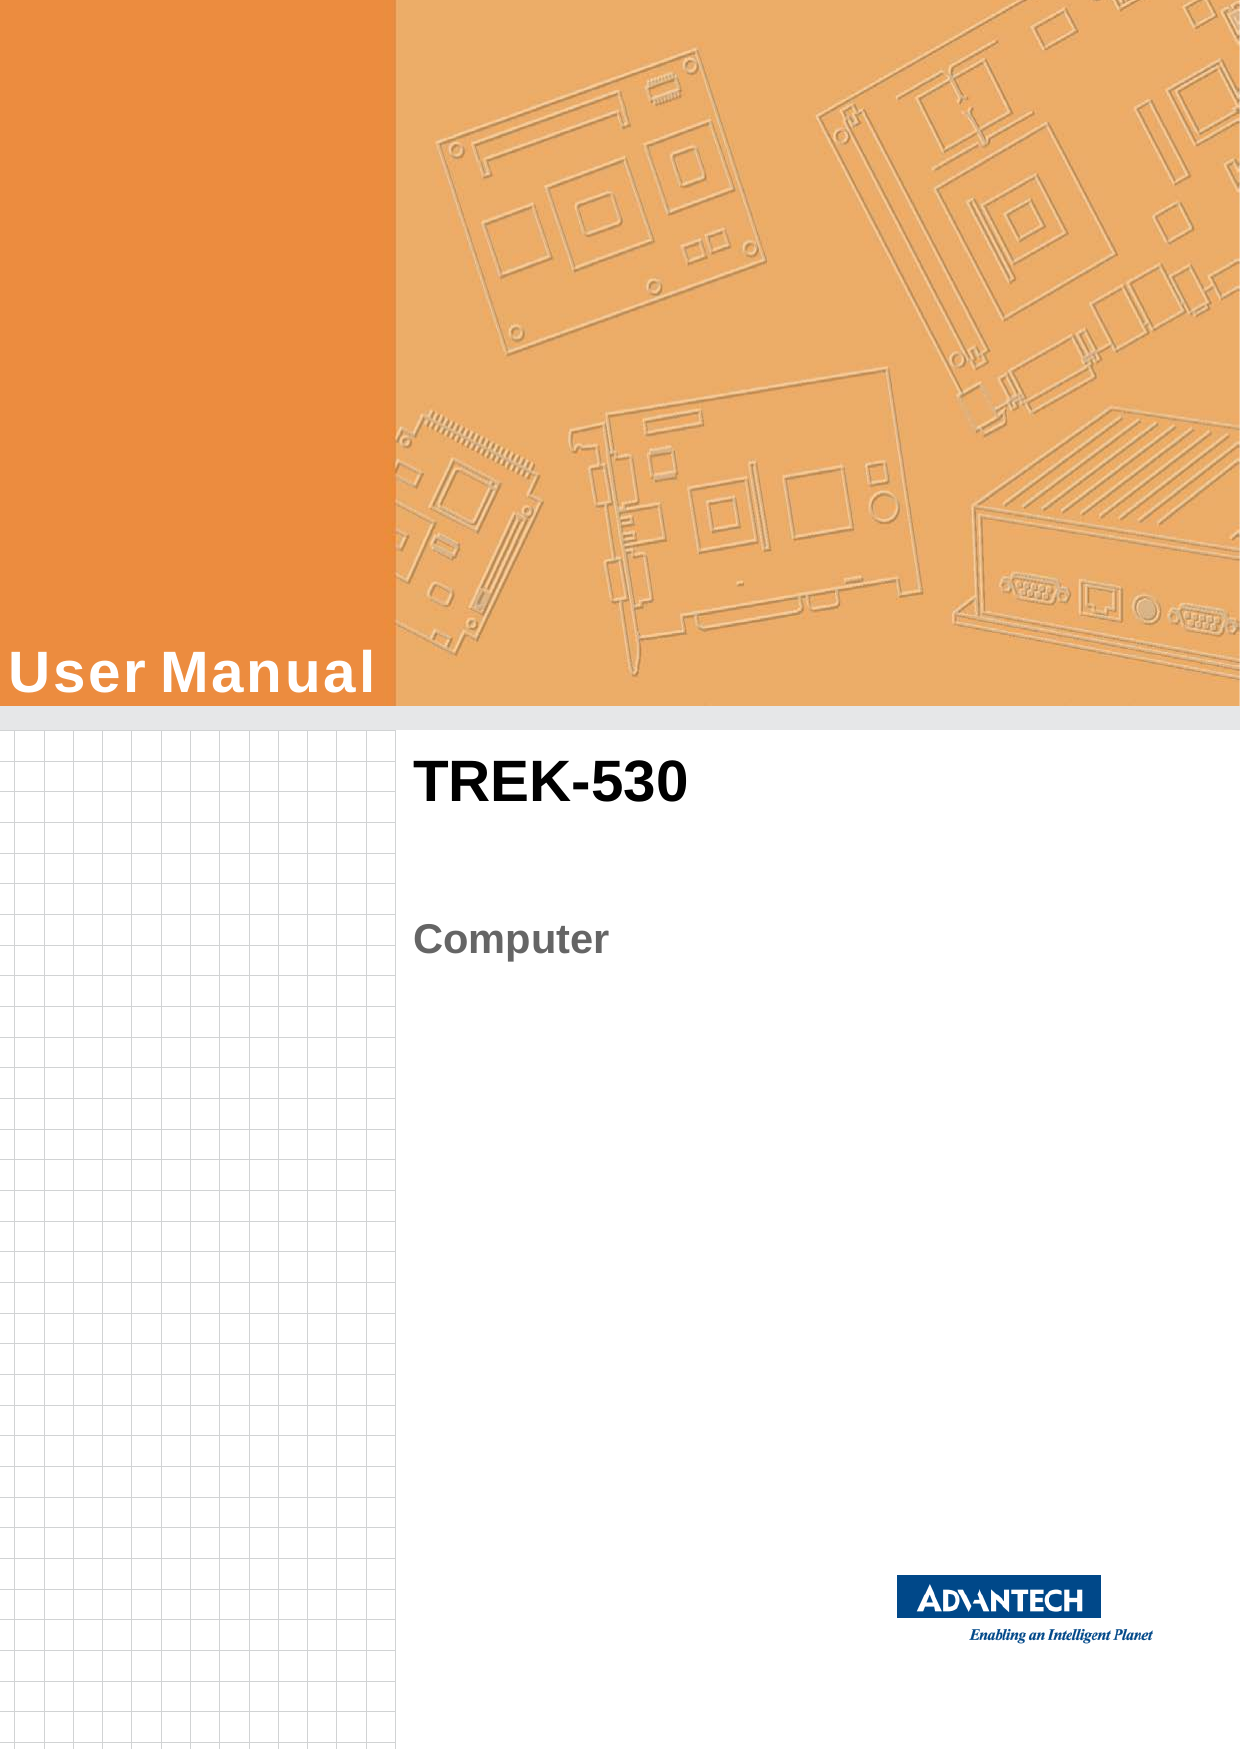                        User Manual      TREK-530      Computer 